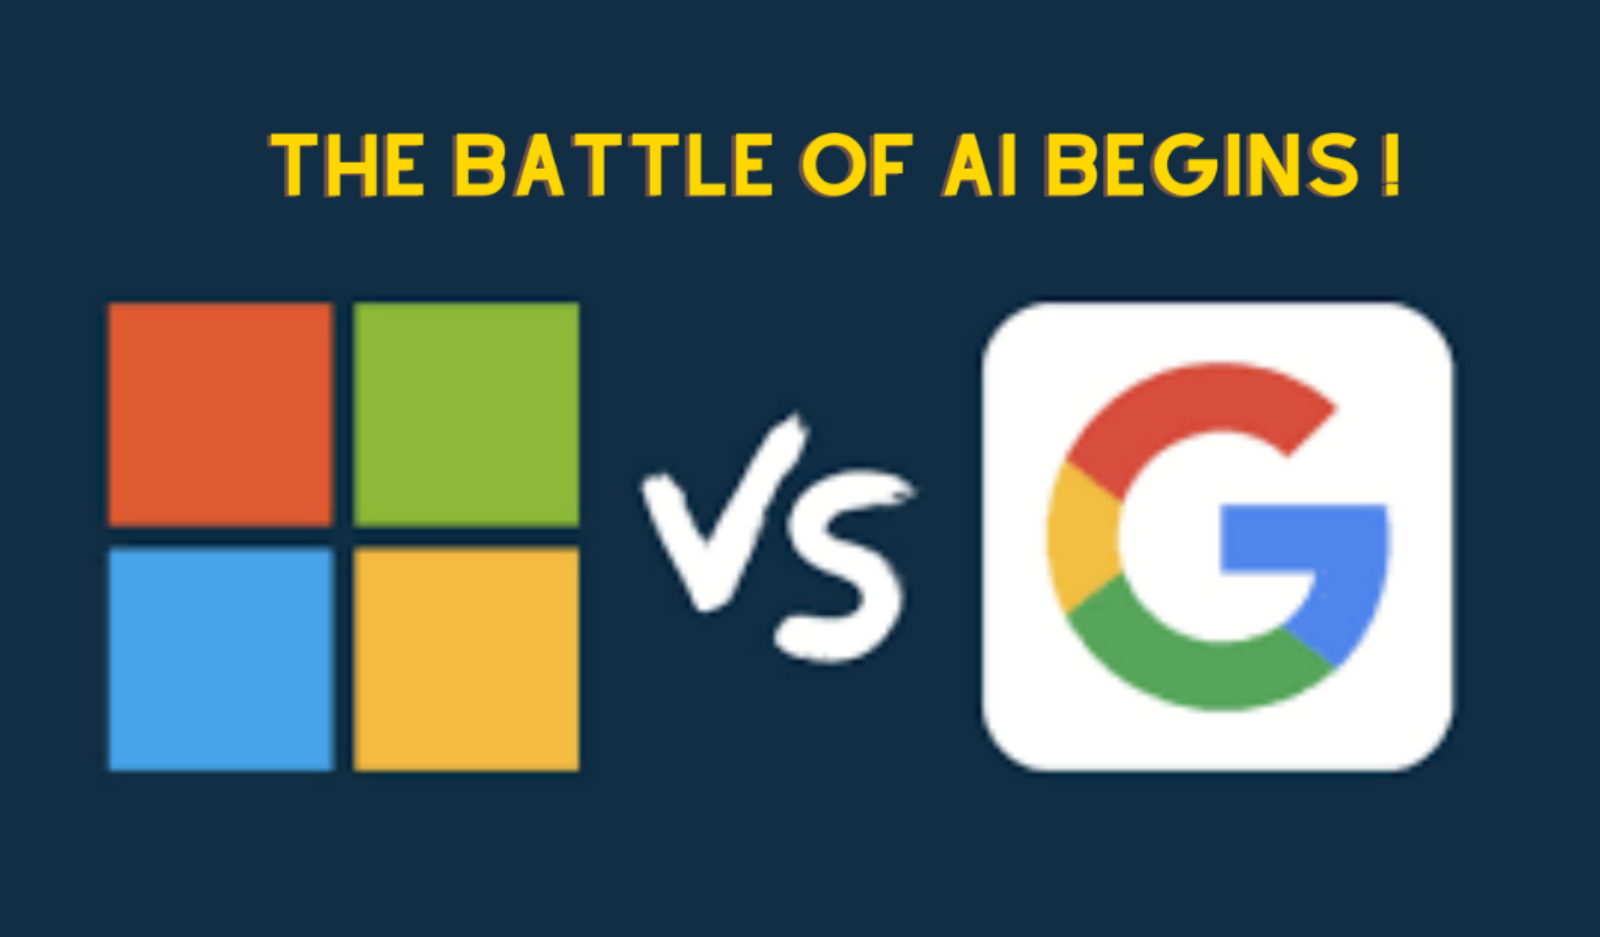 AI搜索大战:微软Google竞争搜索引擎